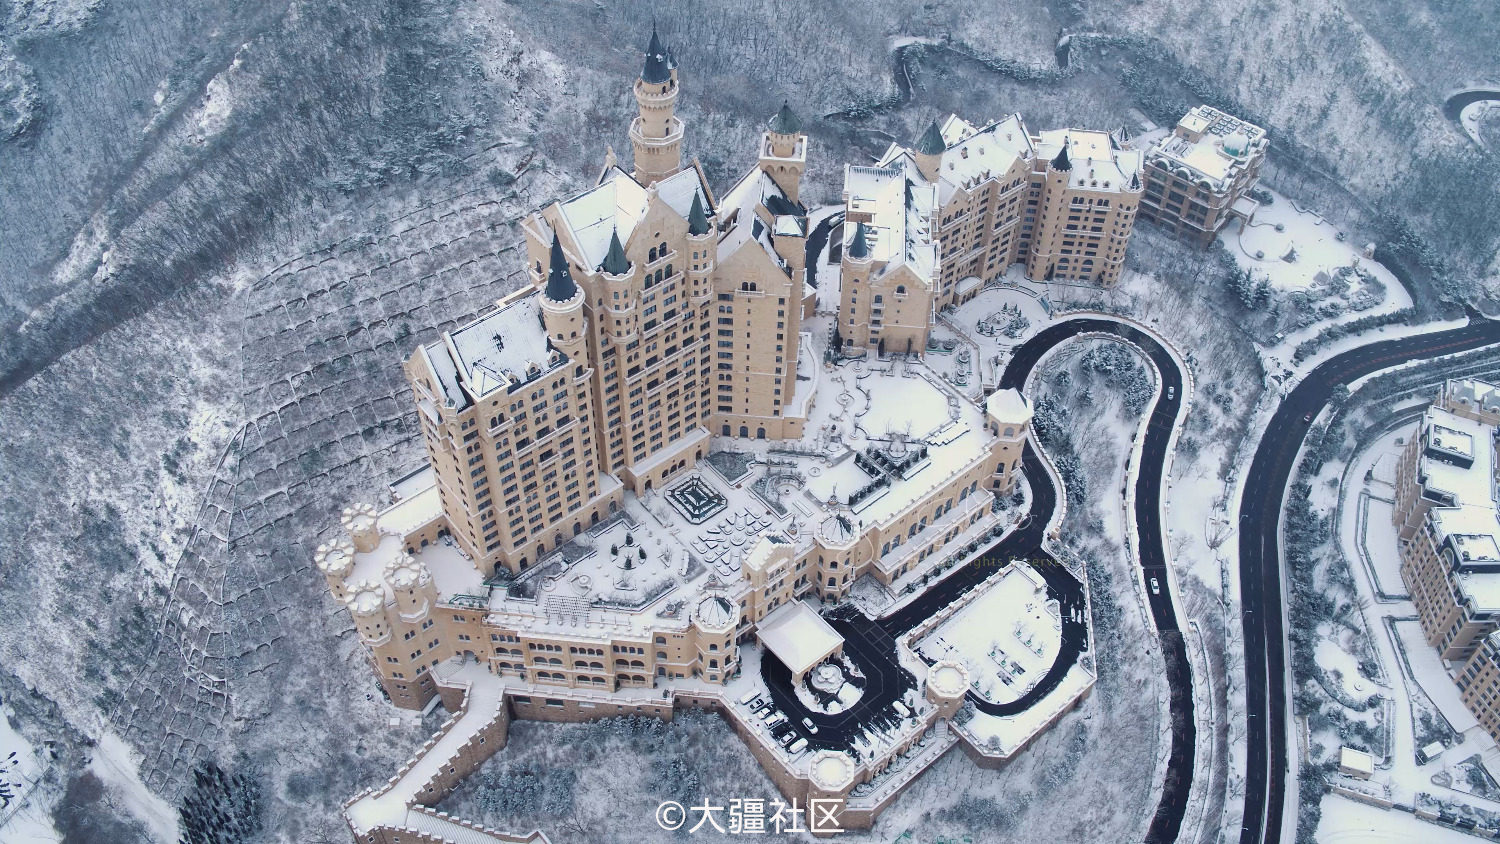 雪中的一方城堡酒店,不知道你们能不能看见雪花